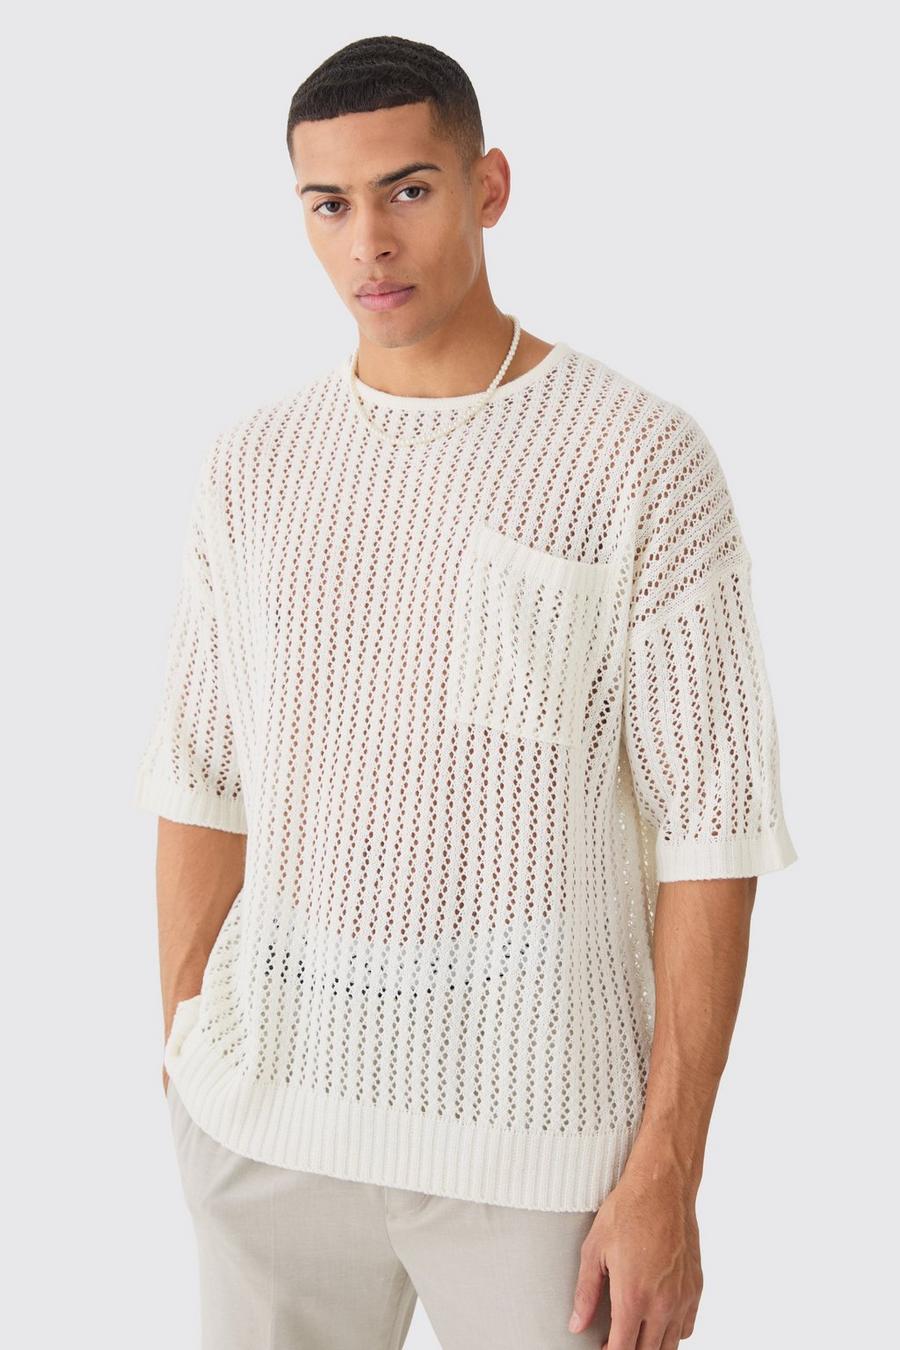 T-shirt oversize in maglia traforata color ecru con tasche